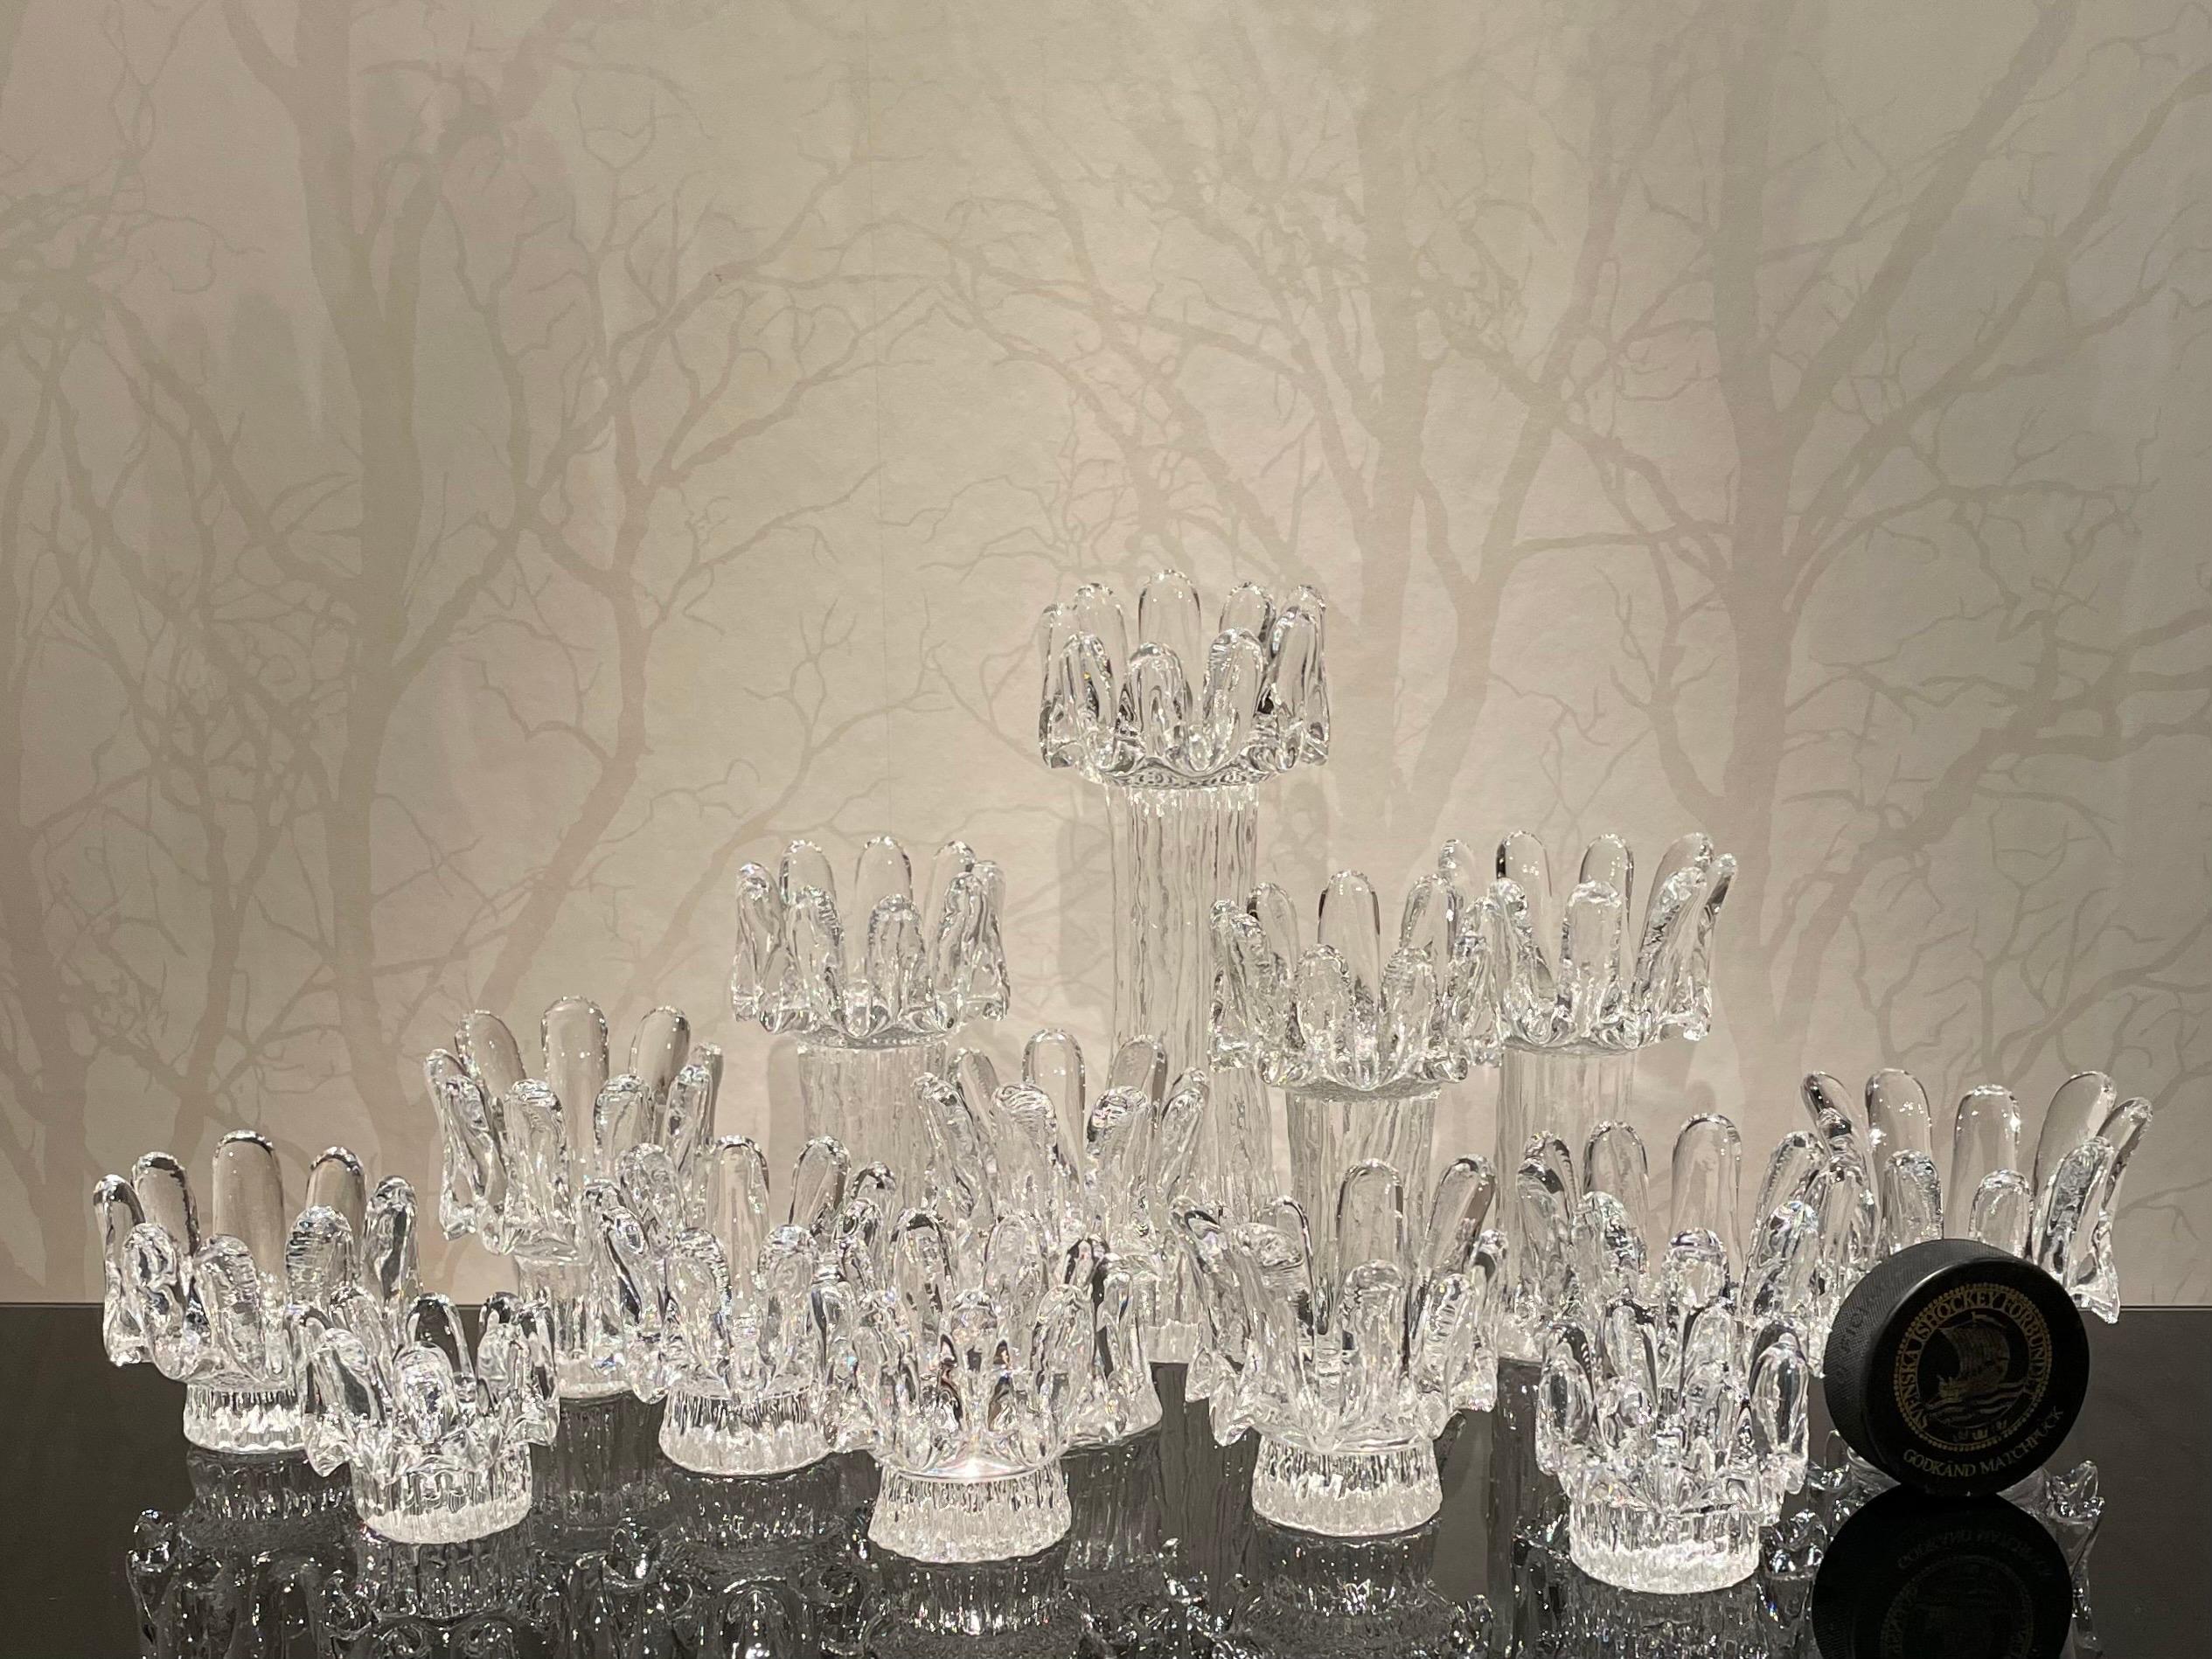 Il s'agit de la collection suédoise de 12 chandeliers Tournesol de l'artiste verrier Göran Wärff pour Kosta Boda Glasbruk. 

Il est composé de 12 pièces de cristal de tailles et de formes différentes qui rappellent la tige robuste d'un tournesol,